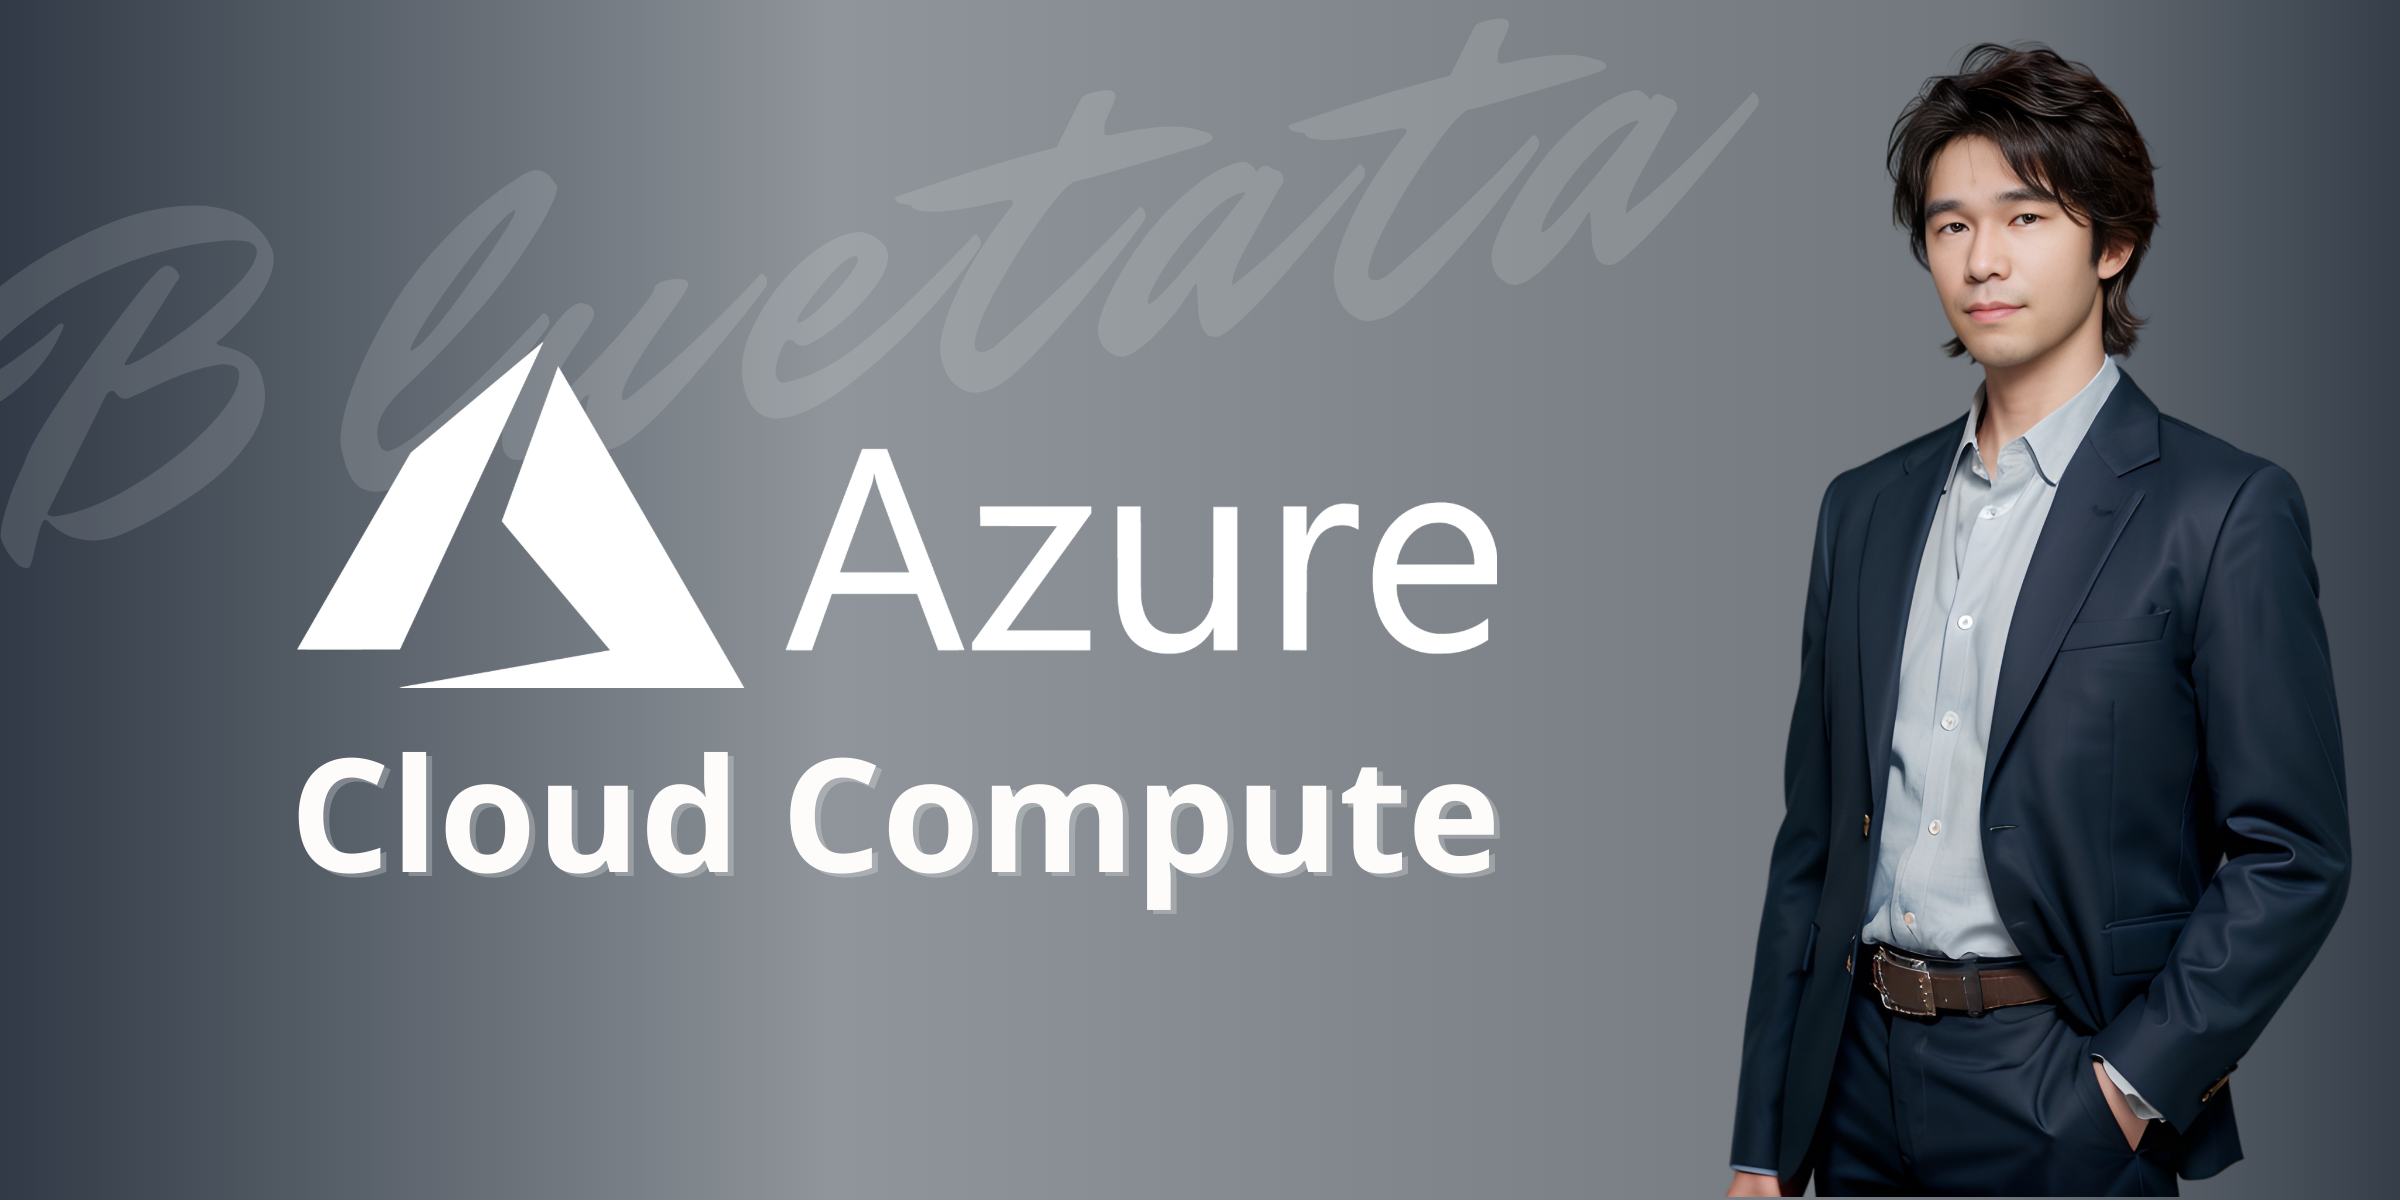 [ 云计算 | Azure 实践 ] 在 Azure 门户中创建 VM 虚拟机并进行验证